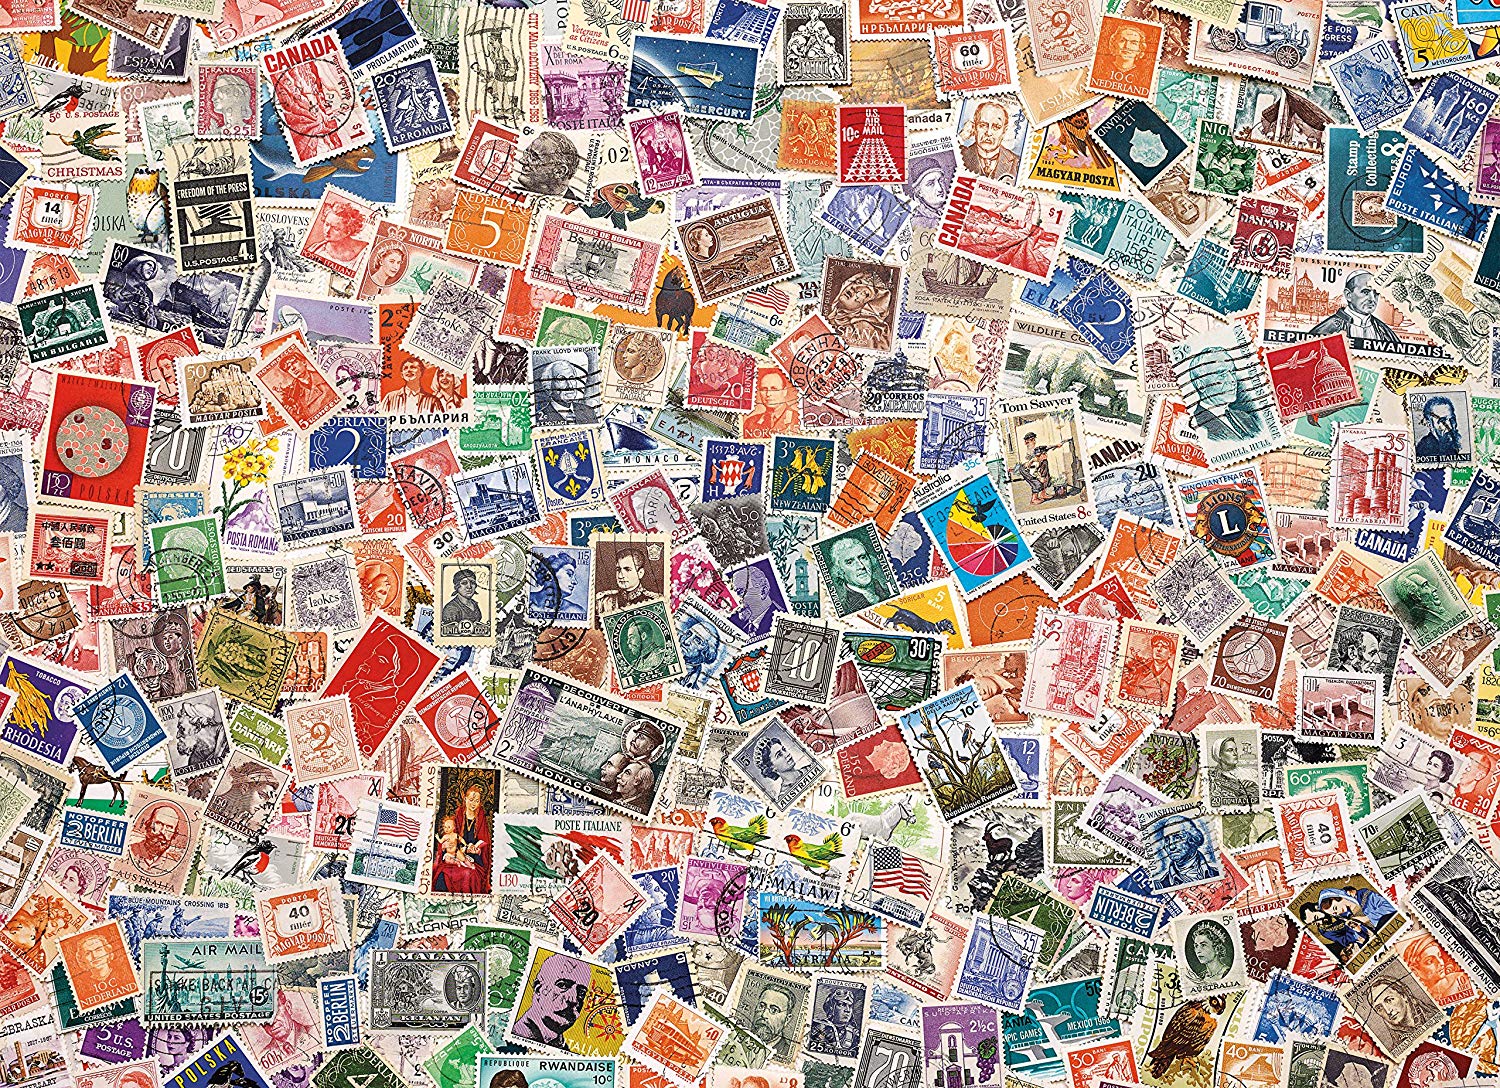 Пазл Clementoni High quality collection почтовые марки (39387), 1000 дет.